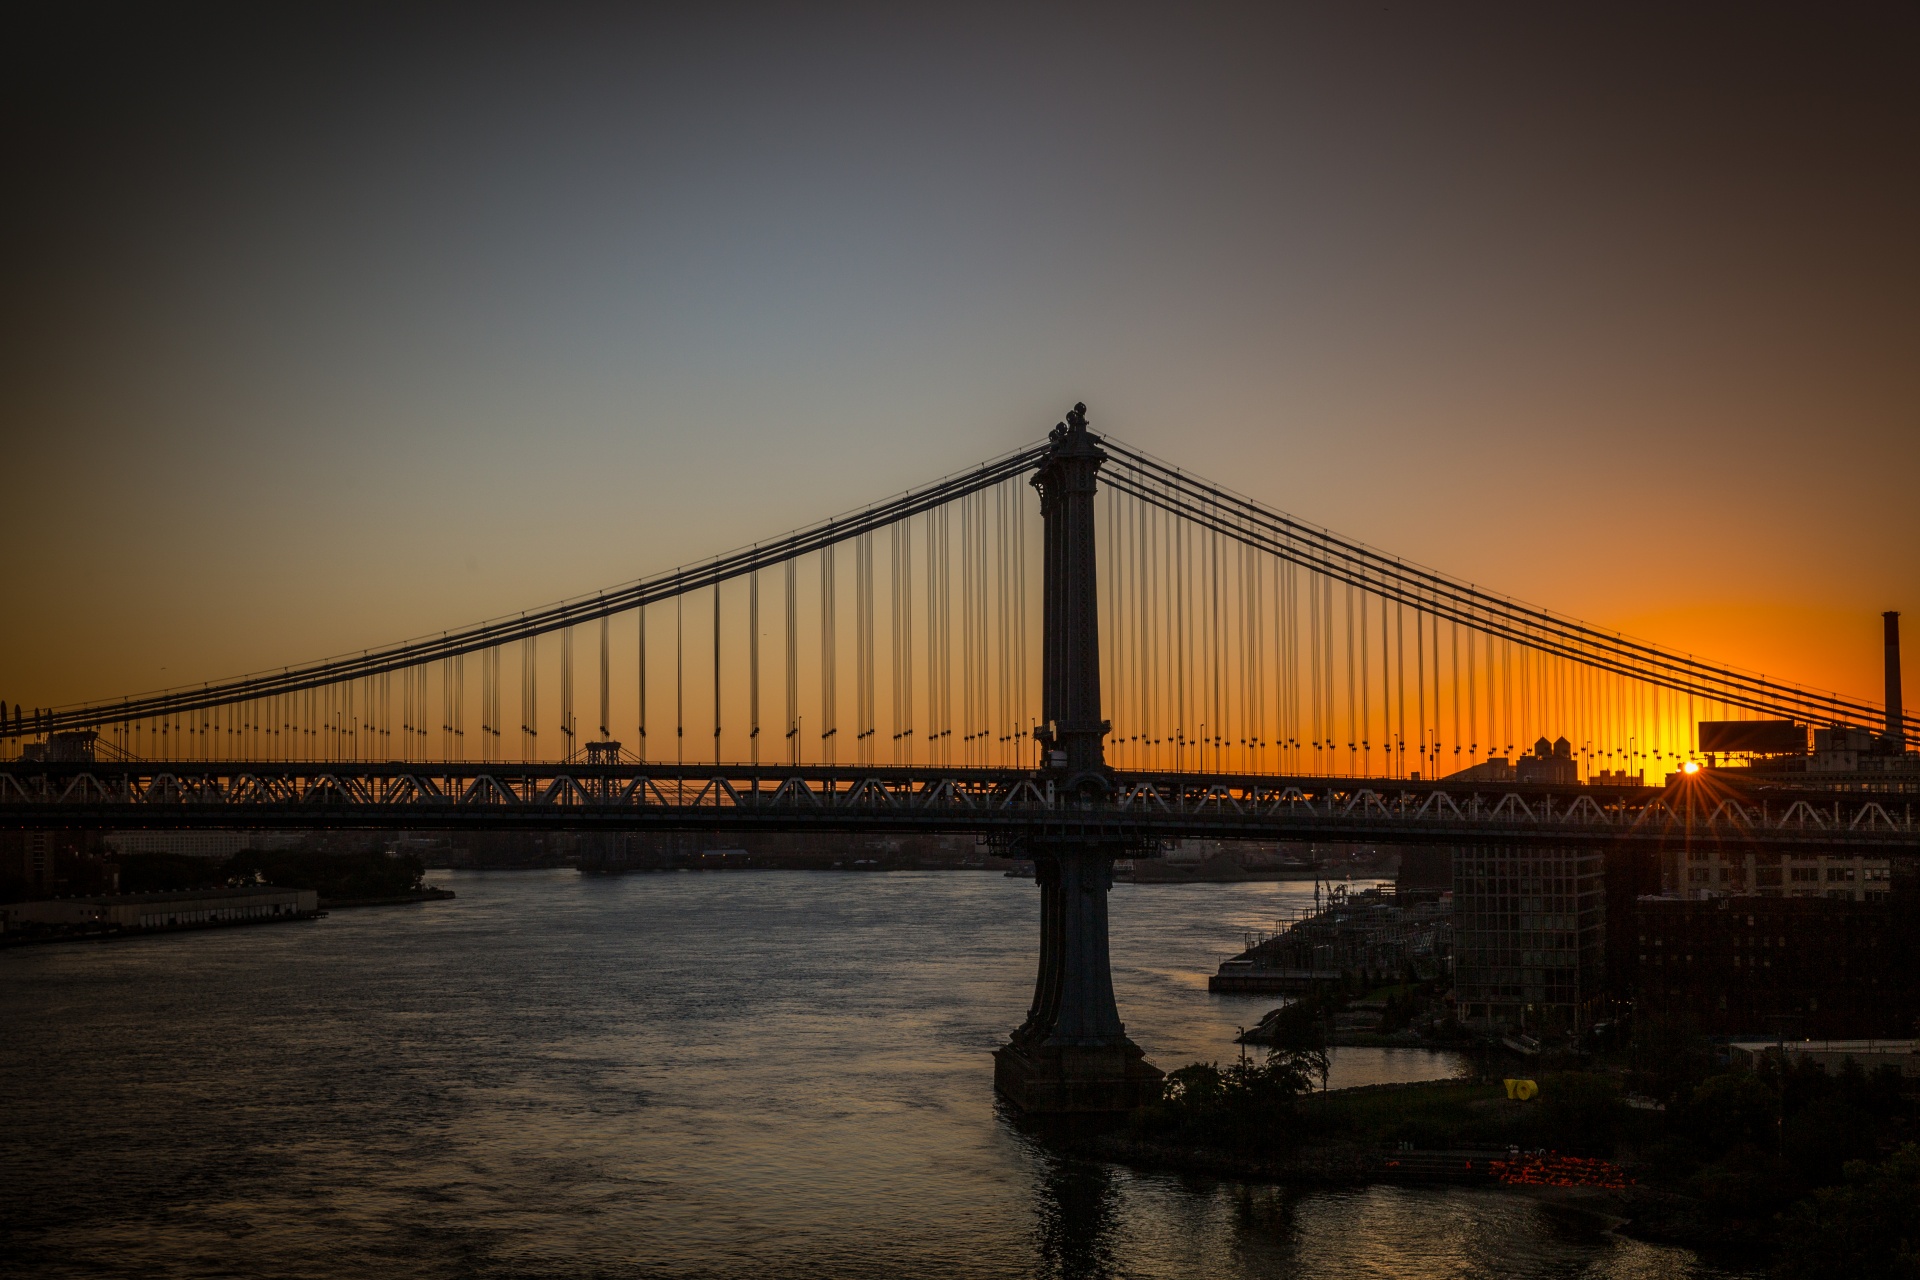 マンハッタン橋 無料画像 Public Domain Pictures